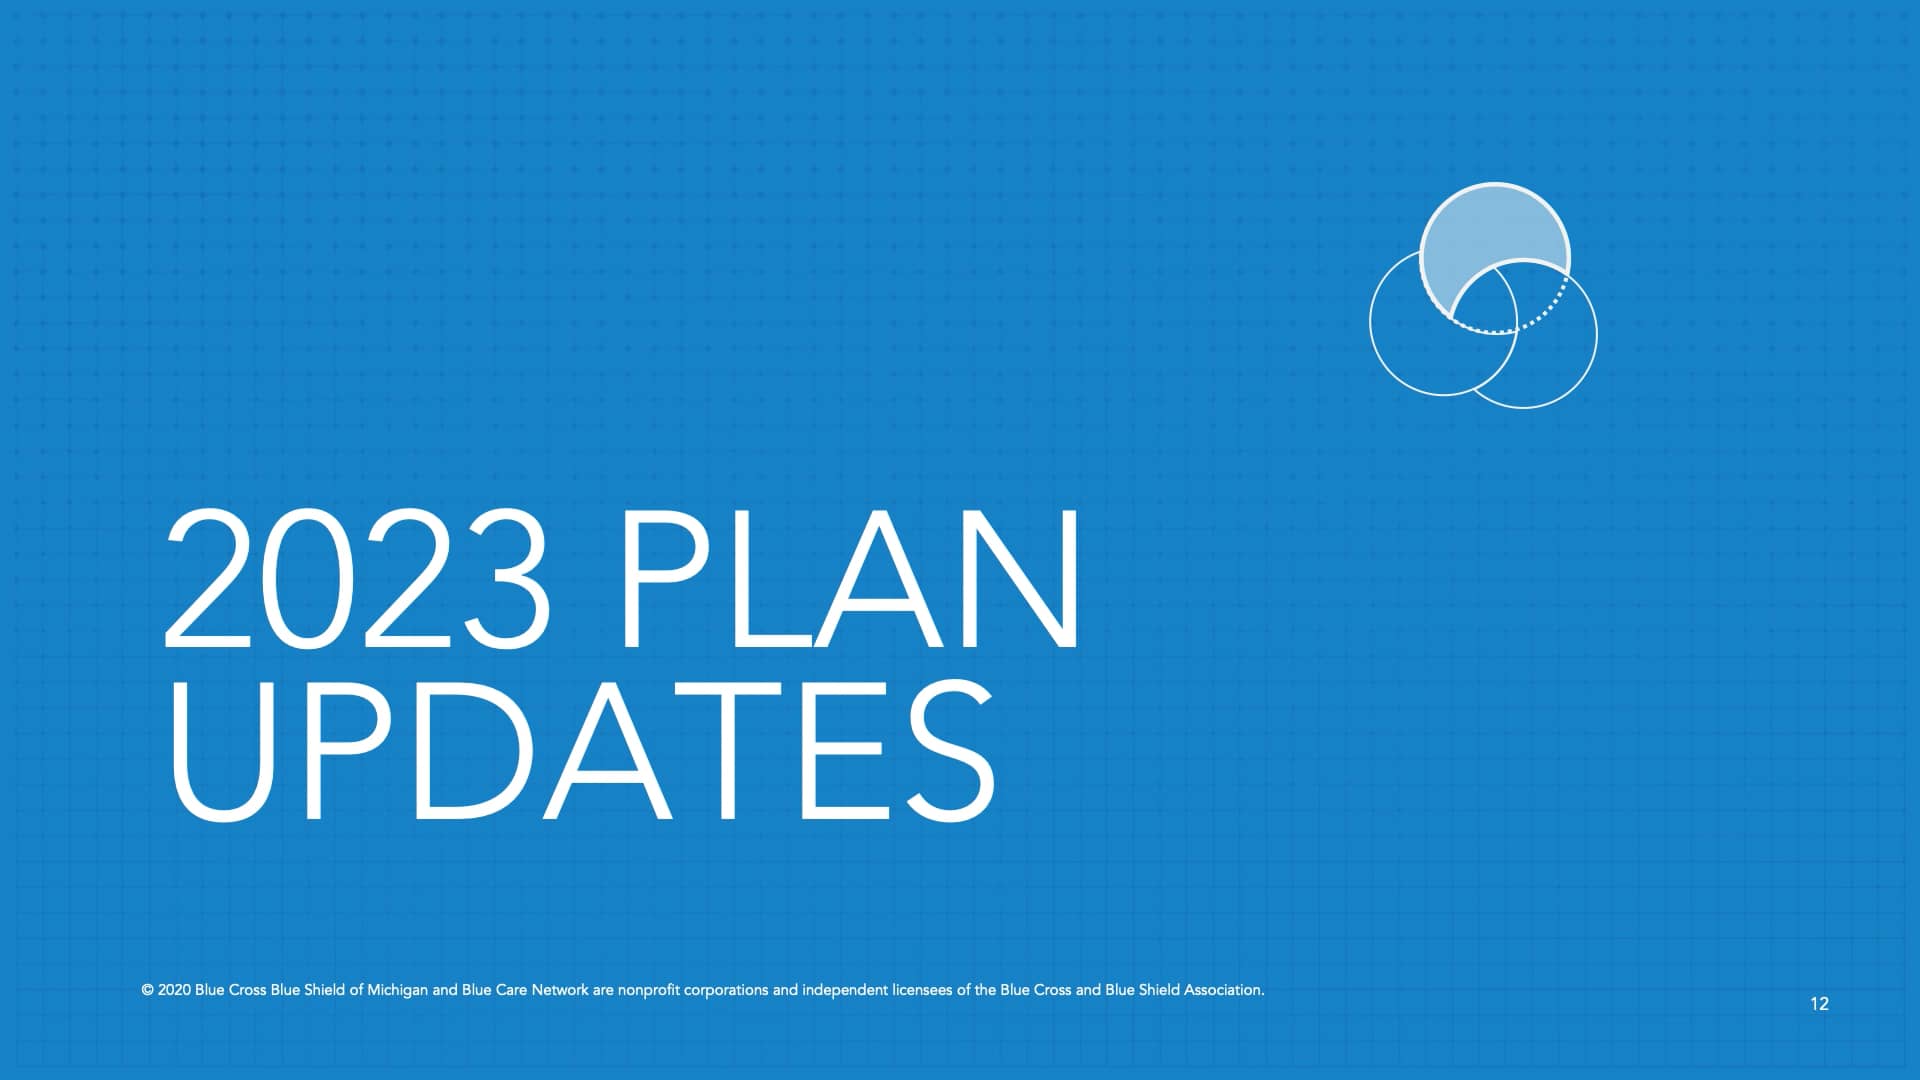 BCBSM 04 2023 Plan Updates.mp4 on Vimeo